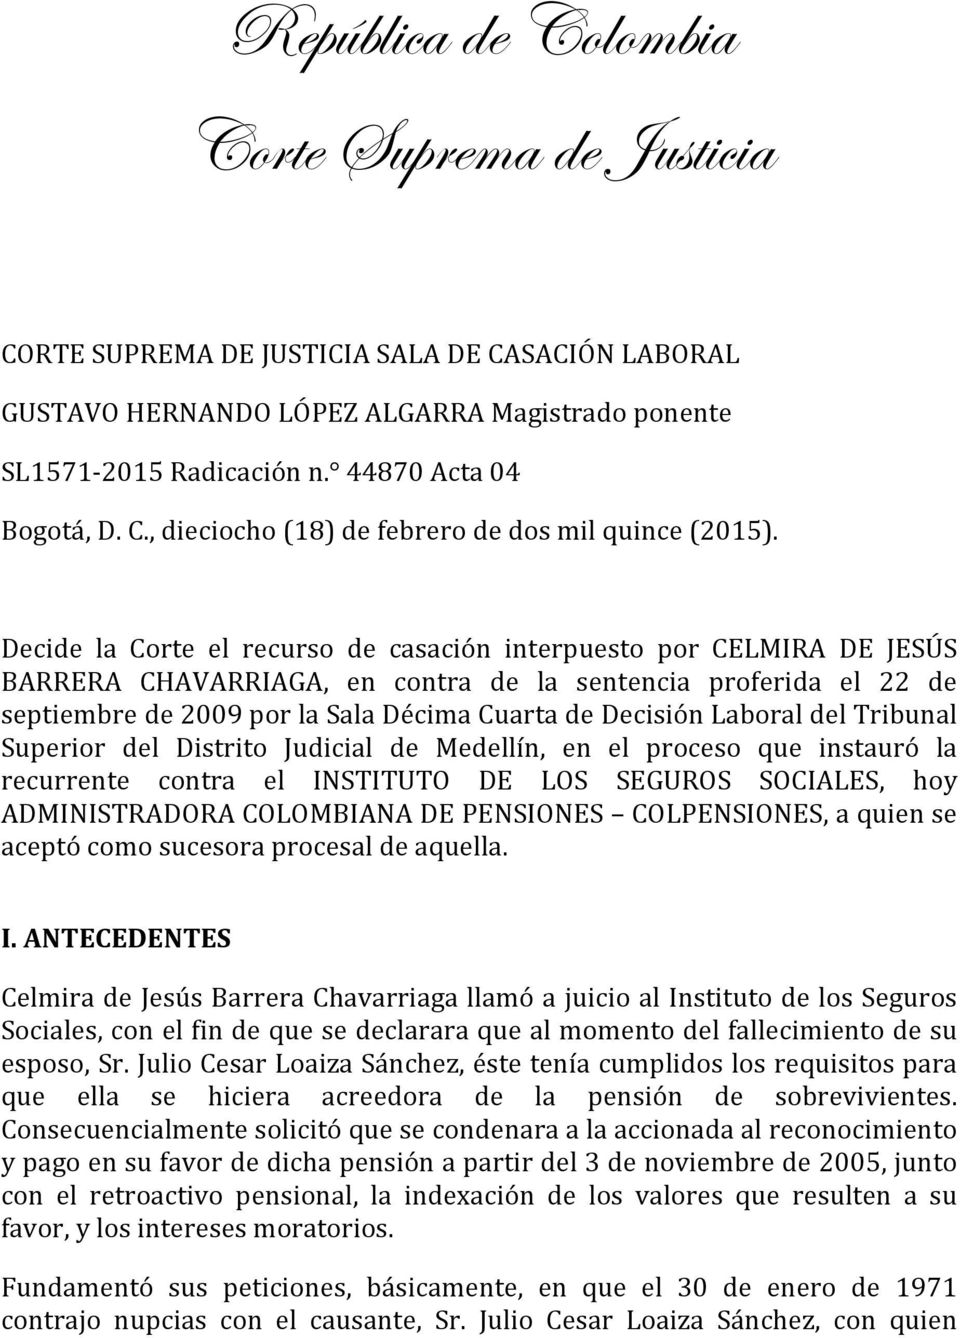 Decide la Corte el recurso de casación interpuesto por CELMIRA DE JESÚS BARRERA CHAVARRIAGA, en contra de la sentencia proferida el 22 de septiembre de 2009 por la Sala Décima Cuarta de Decisión